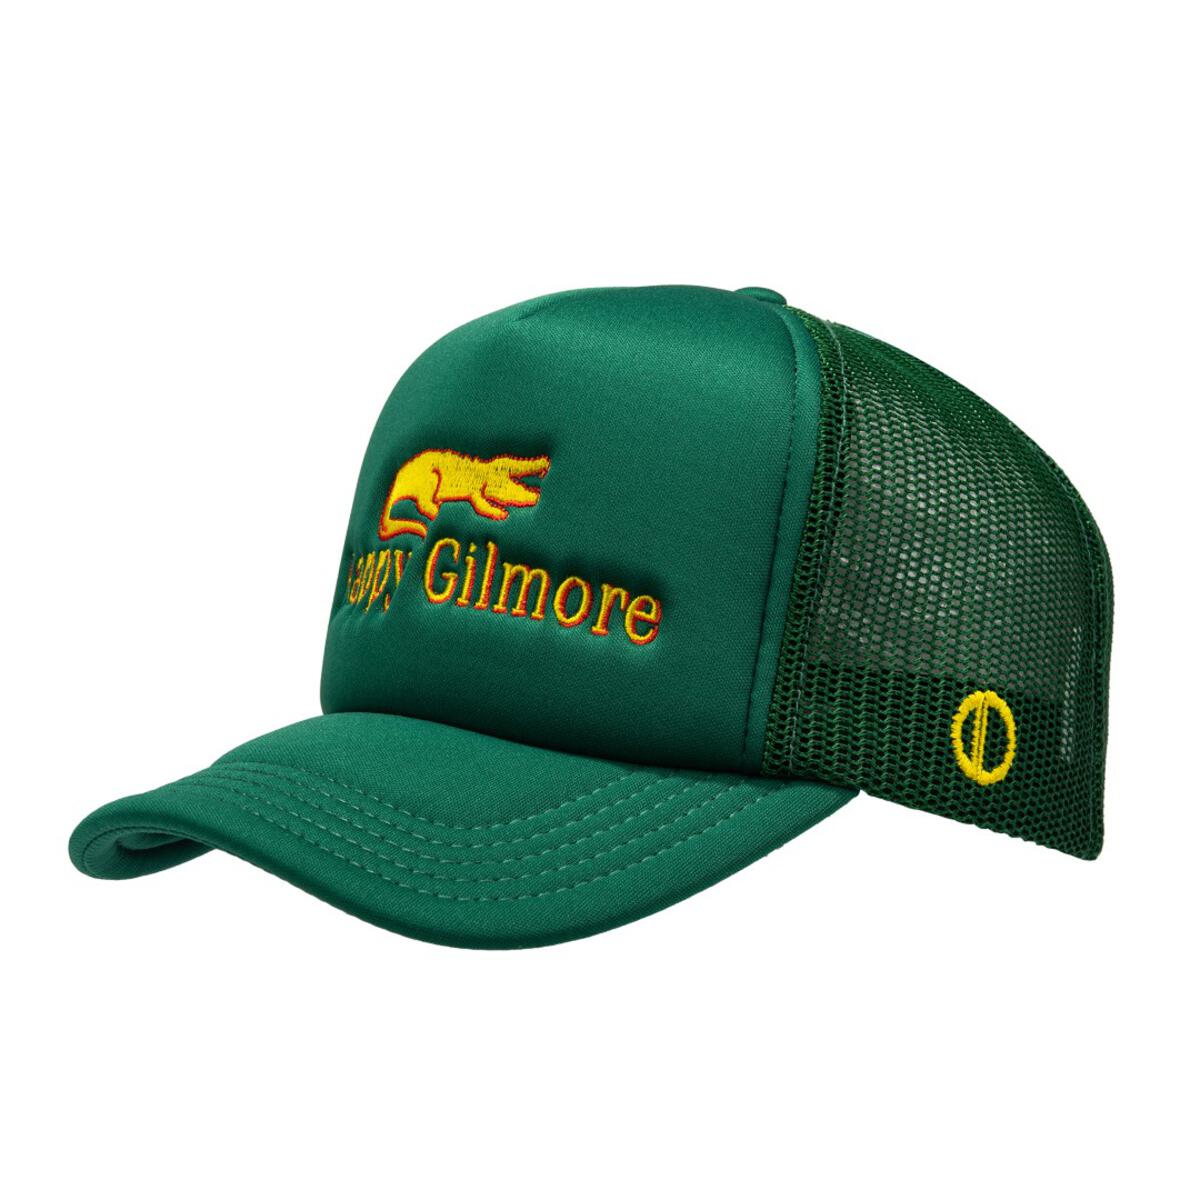 Happy Gilmore - Trucker Hat